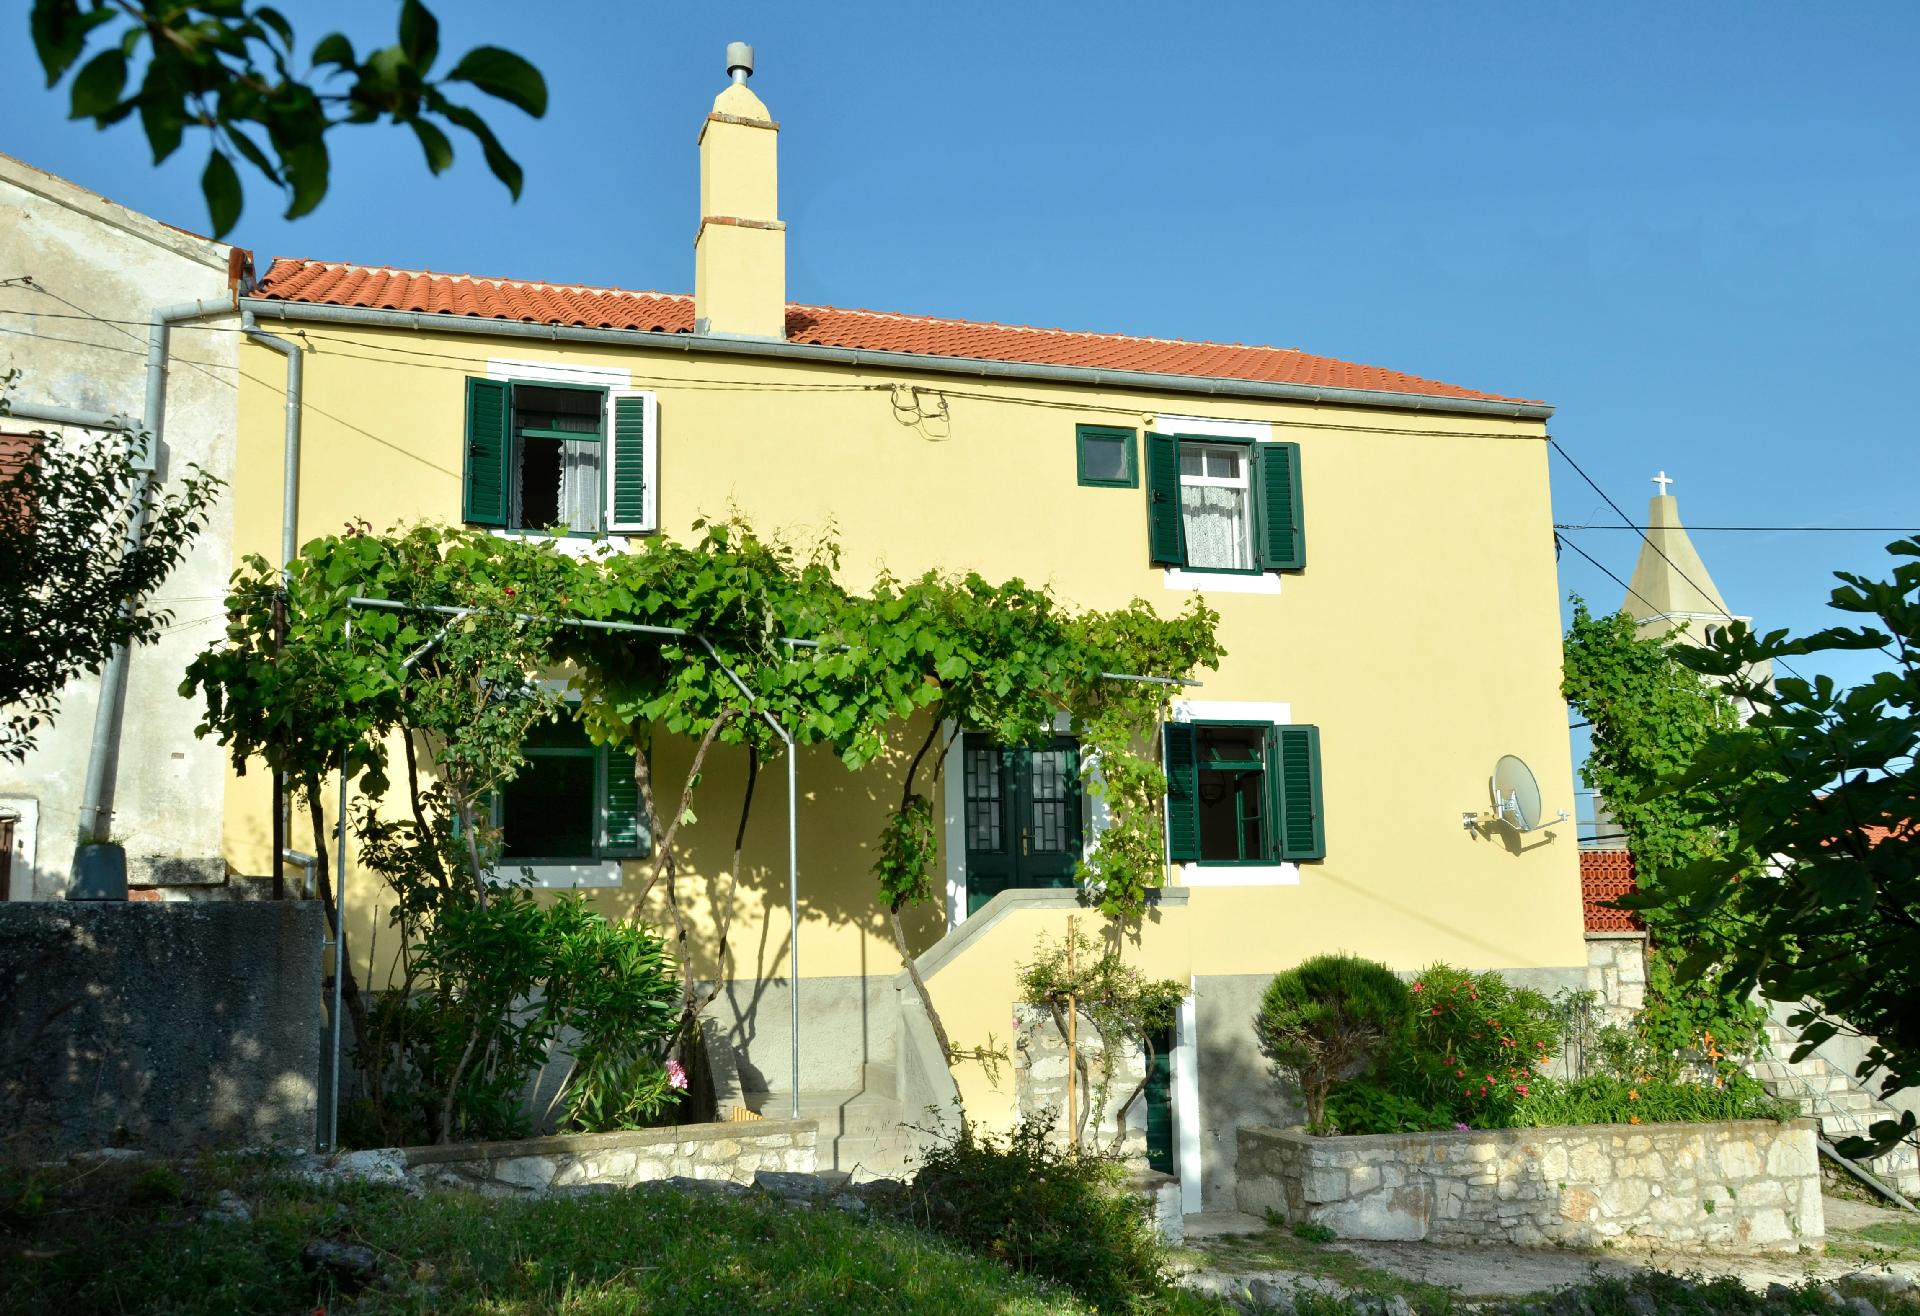 Insel Cres, Stivan, liebevoll restauriertes Dorfha Ferienhaus in Kroatien